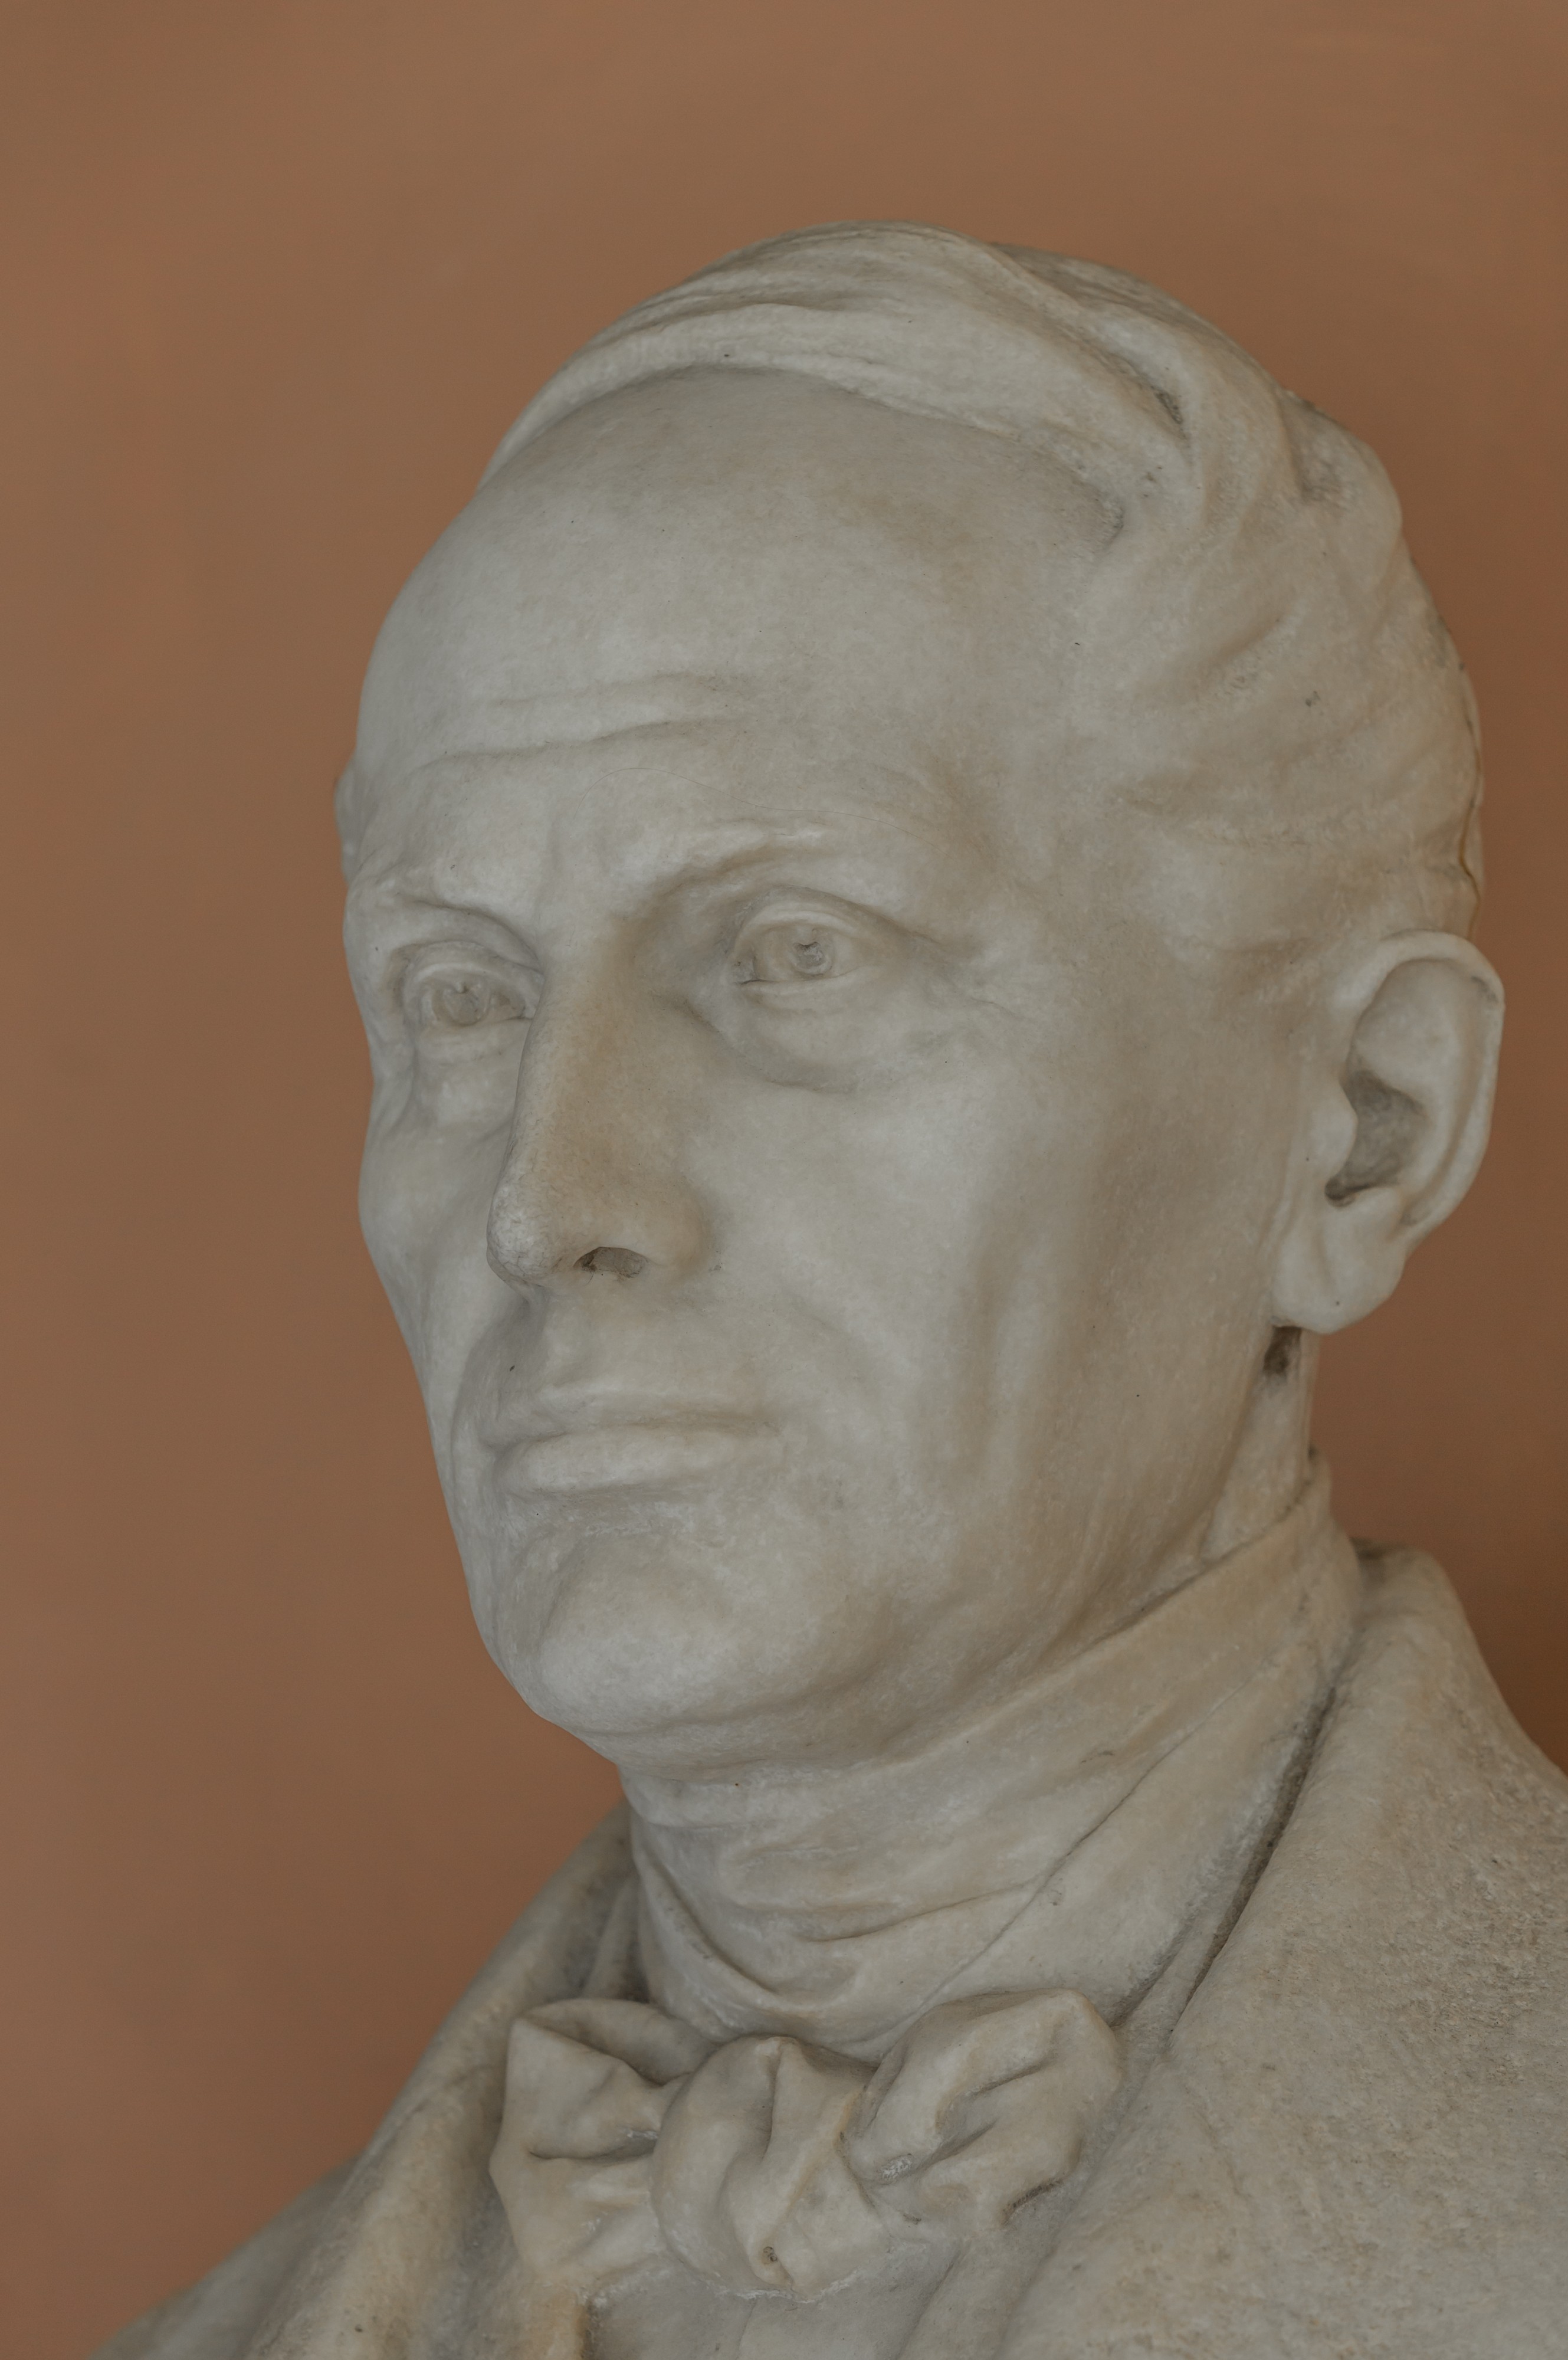 Christian Doppler (1803-1853), Nr. 111, bust (marble) in the Arkadenhof of the University of Vienna-2939